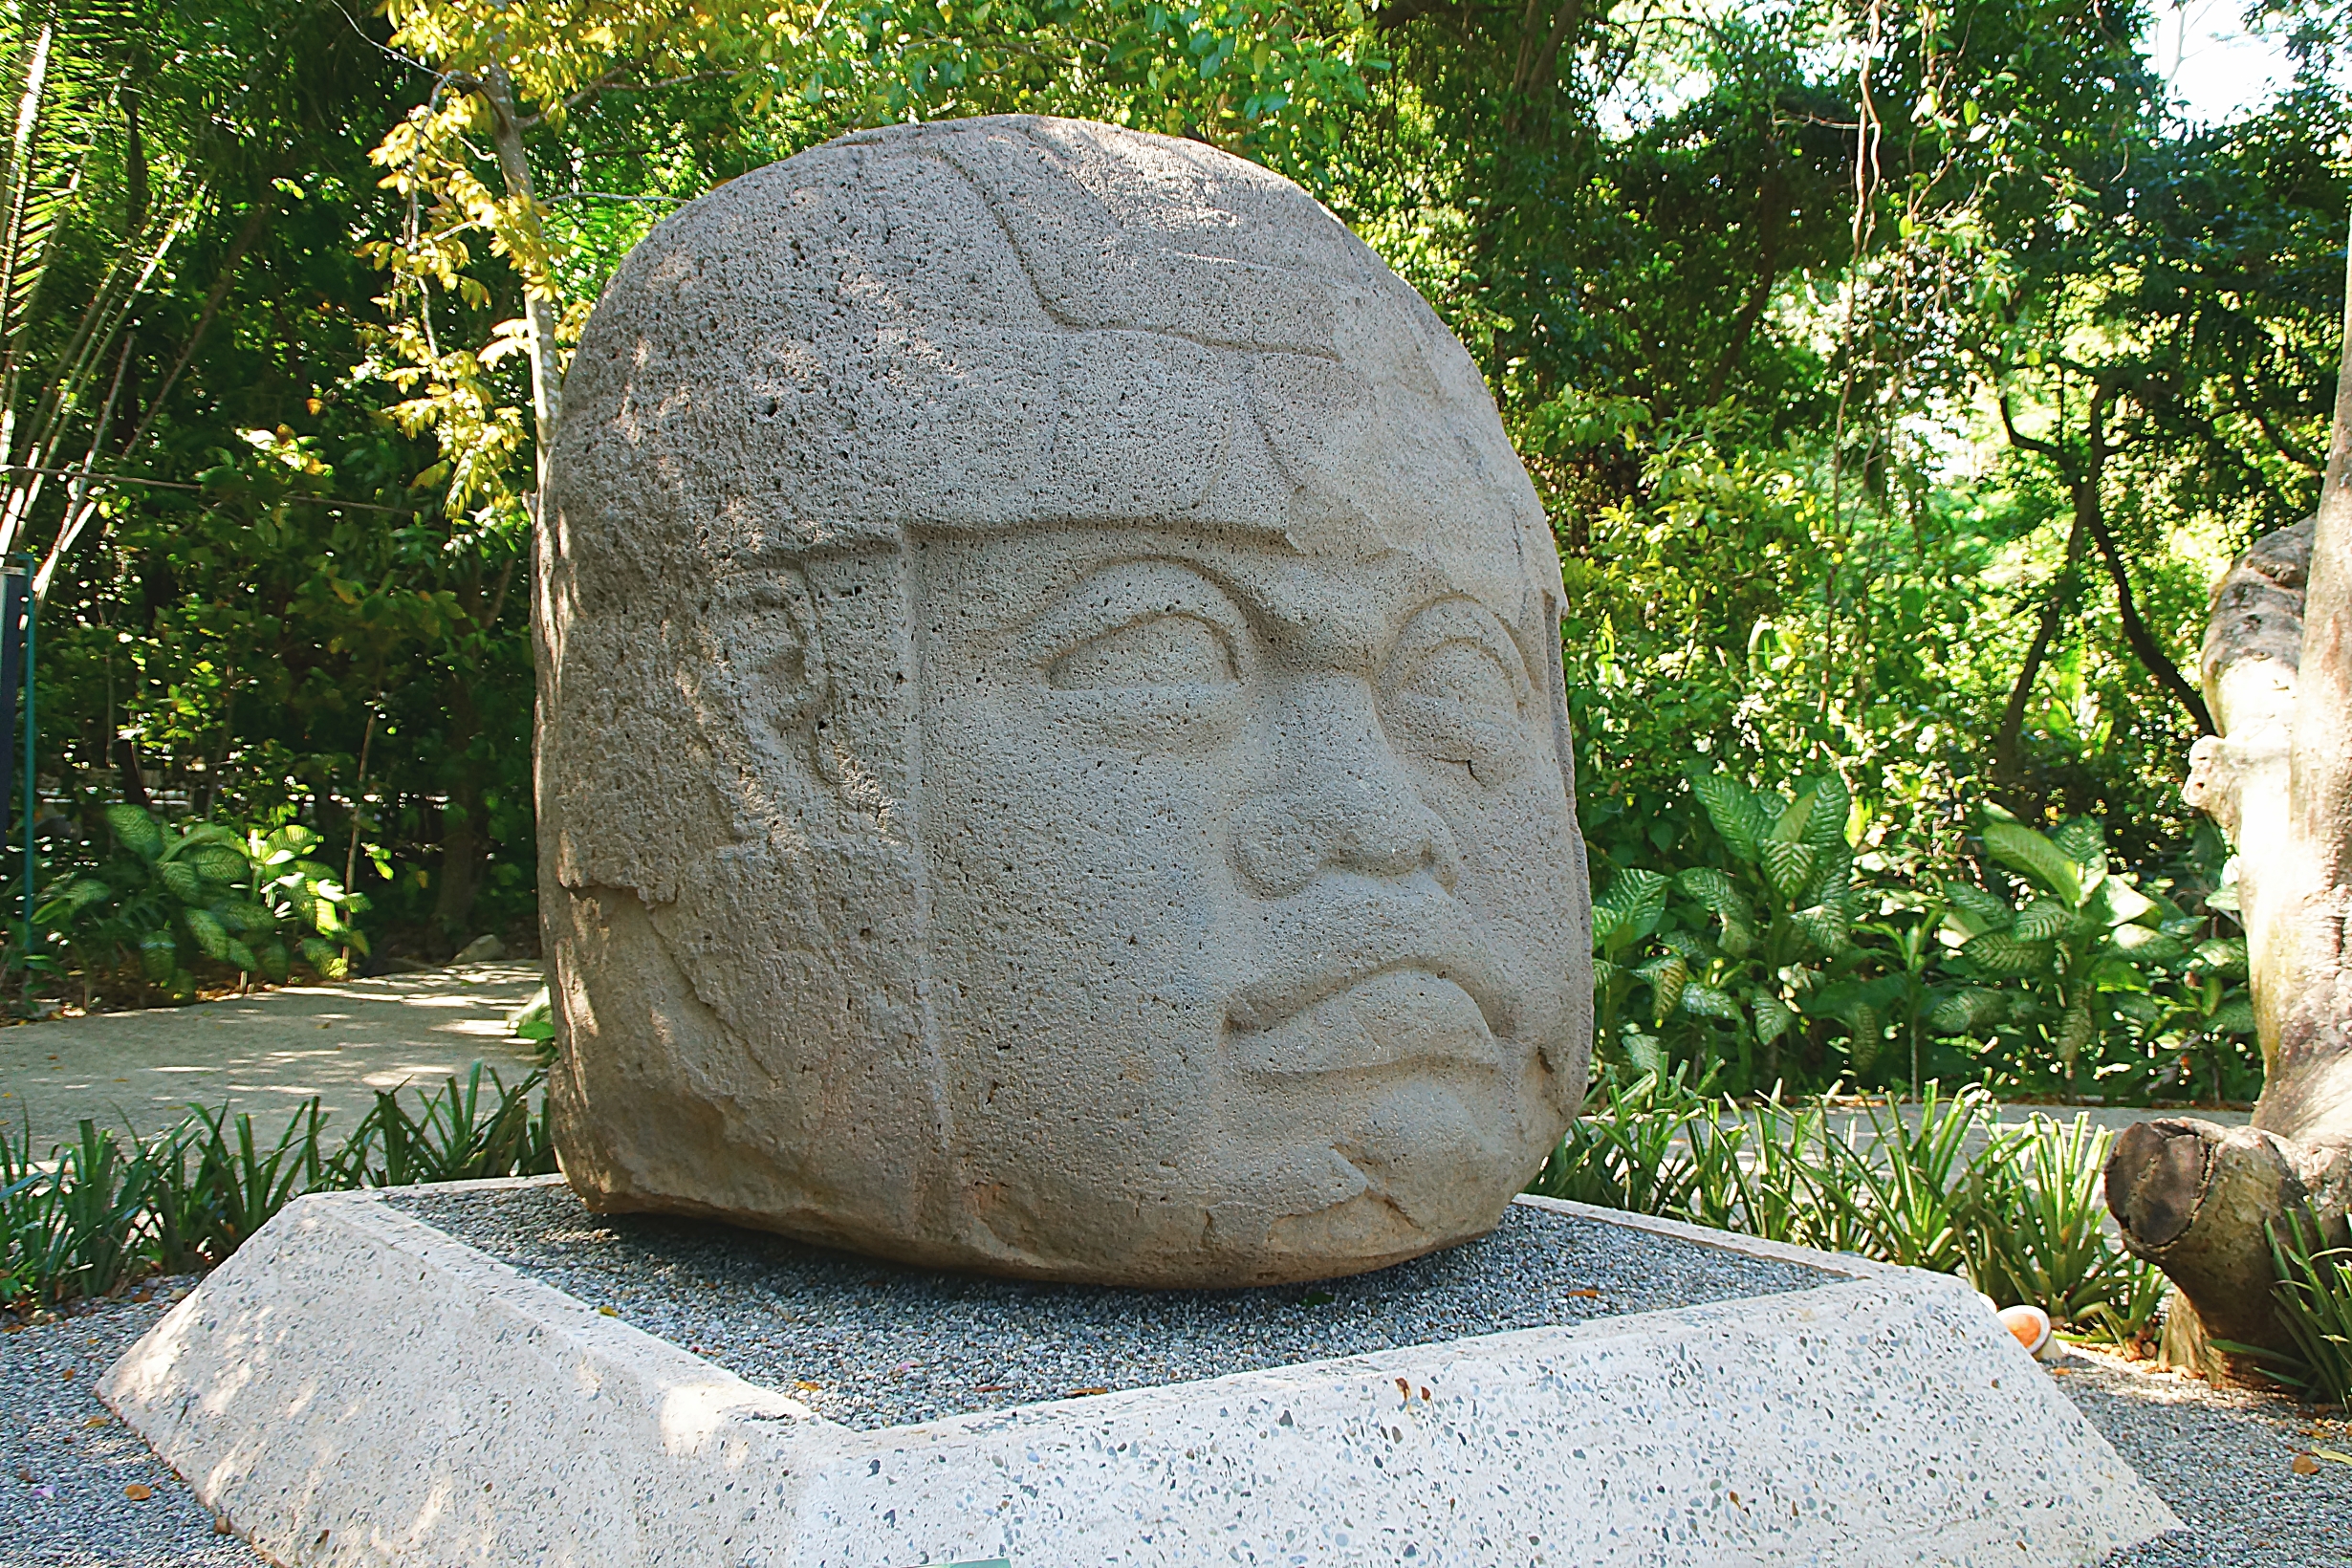 Одна из знаменитых каменных голов работы ольмеков - древнейшего народа Ц.Америки. Фото Морошкина В.В.